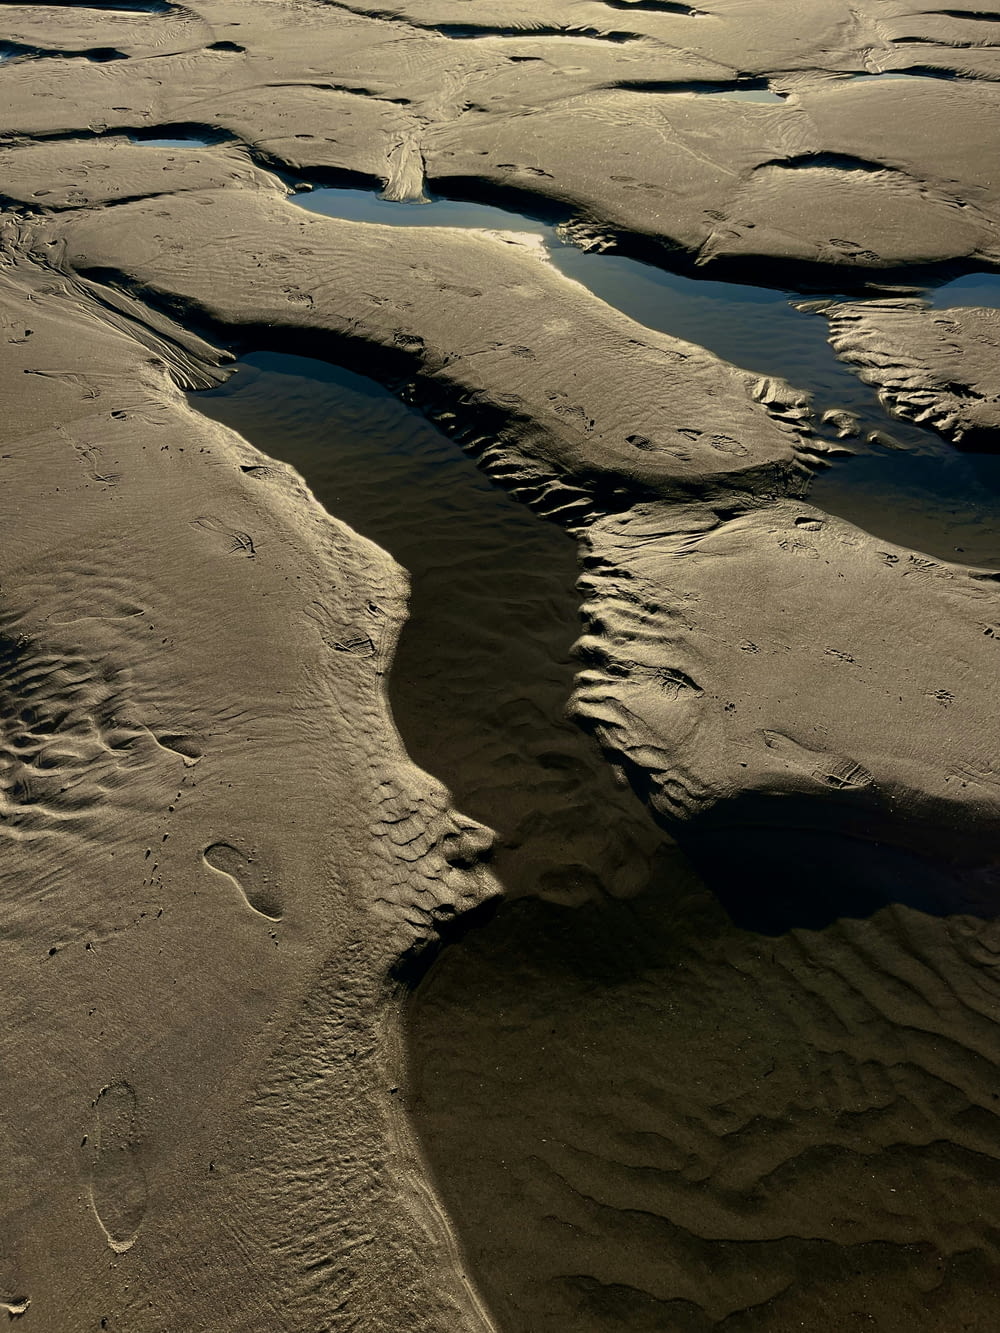 an aerial view of a river running through a sandy beach